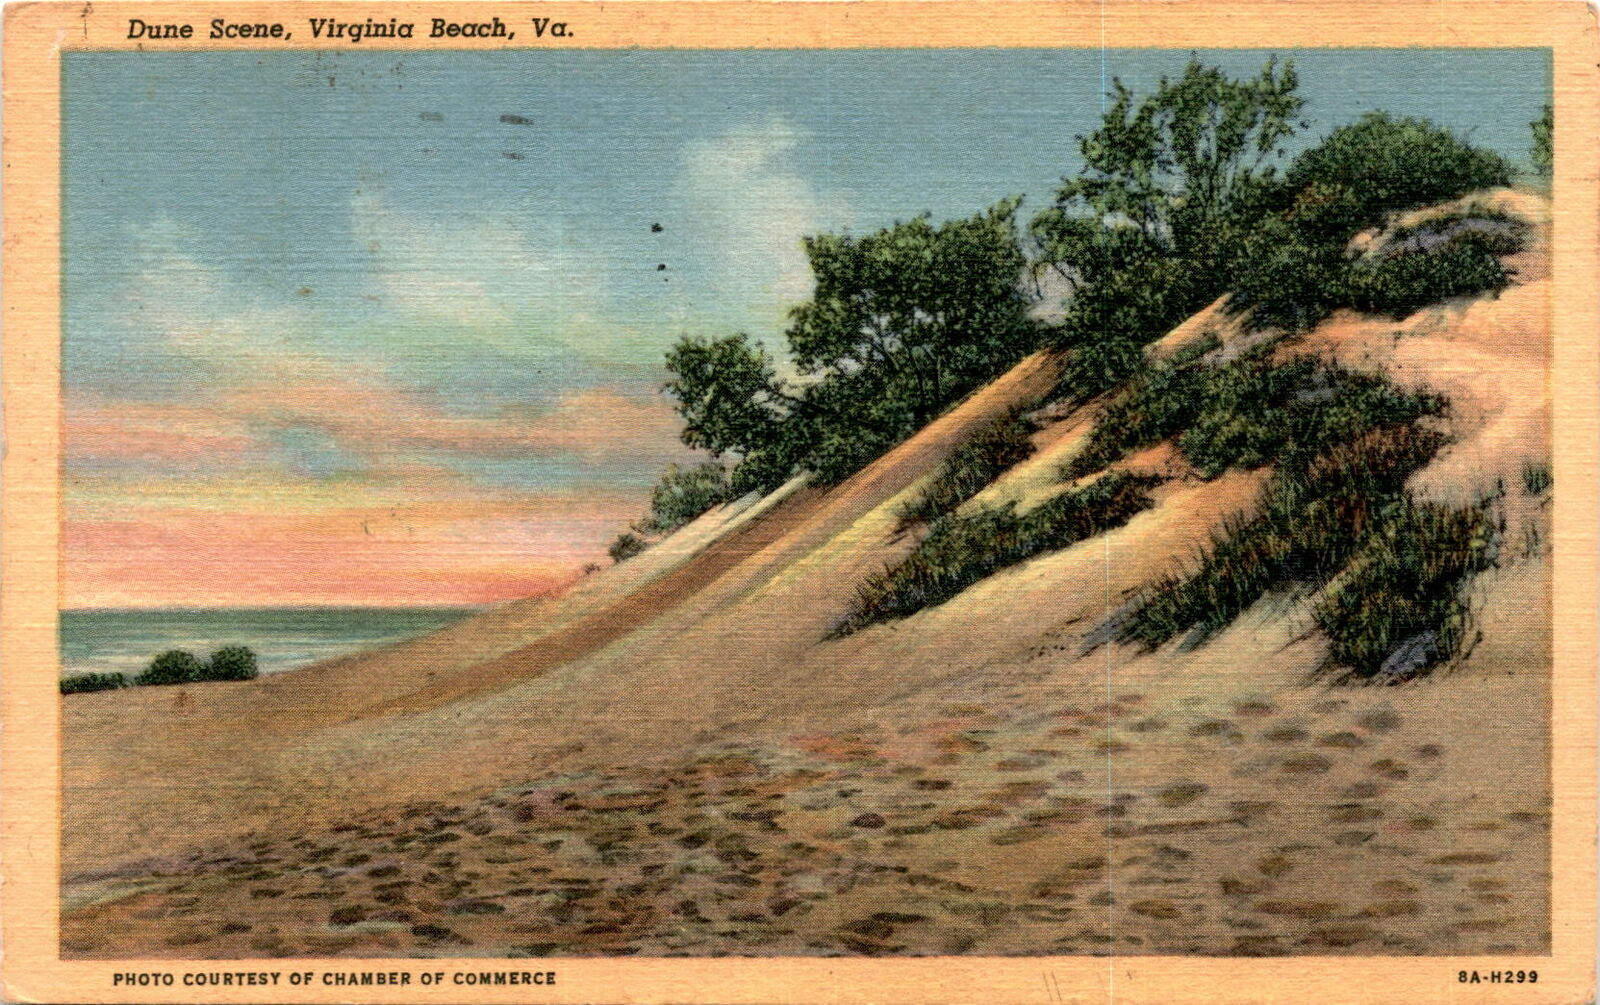 Virginia Beach, Virginia, Baltimore, Maryland, Miami Beach, Florida, Postcard